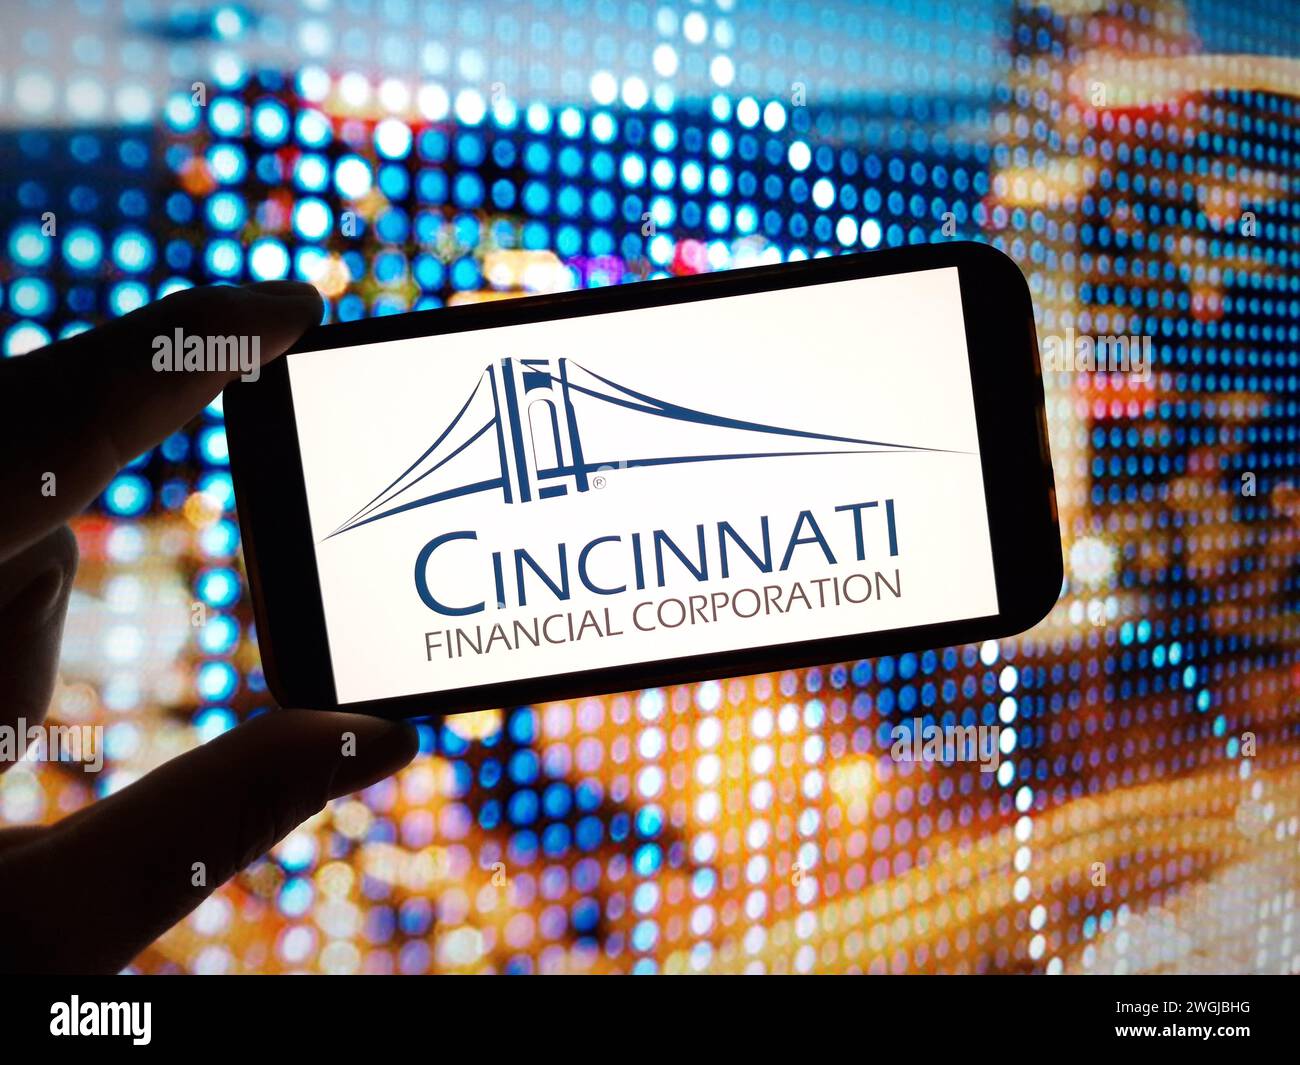 Konskie, Polonia - 4 febbraio 2024: Logo aziendale di Cincinnati Financial Corporation visualizzato sullo schermo del telefono cellulare Foto Stock